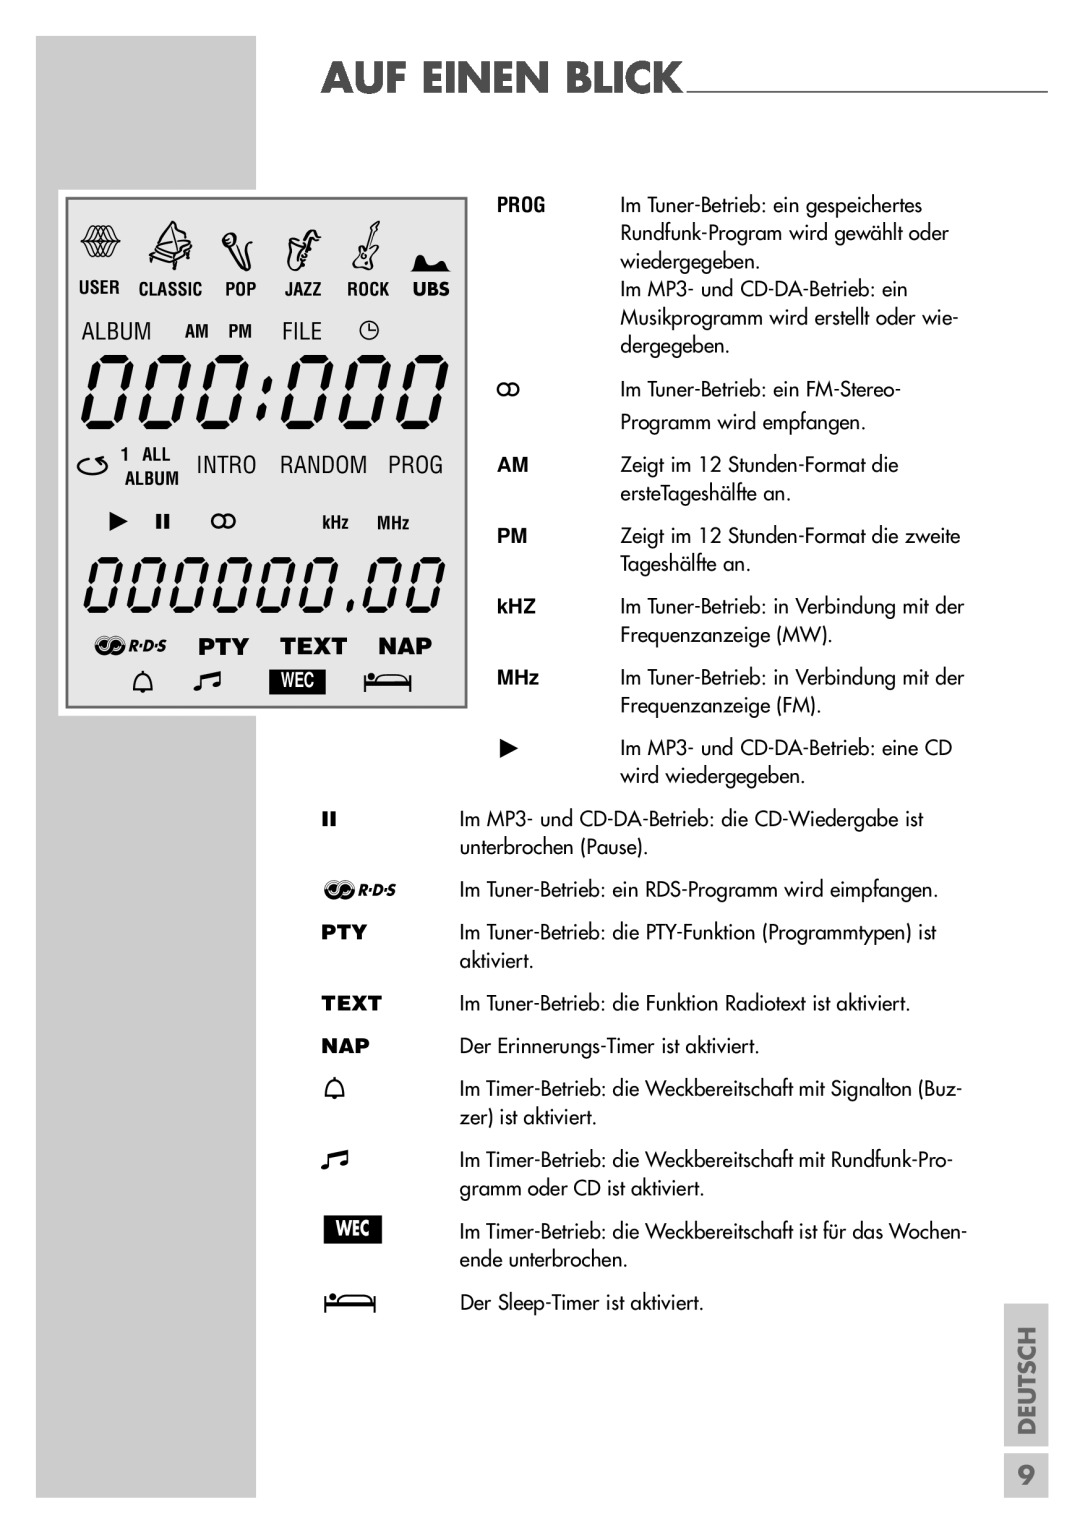 Grundig UMS 5400 DEC manual 000000.00, Xc V Y B, Album, FILE w, Intro Random Prog, f PTY, Text Nap, Deutsch 